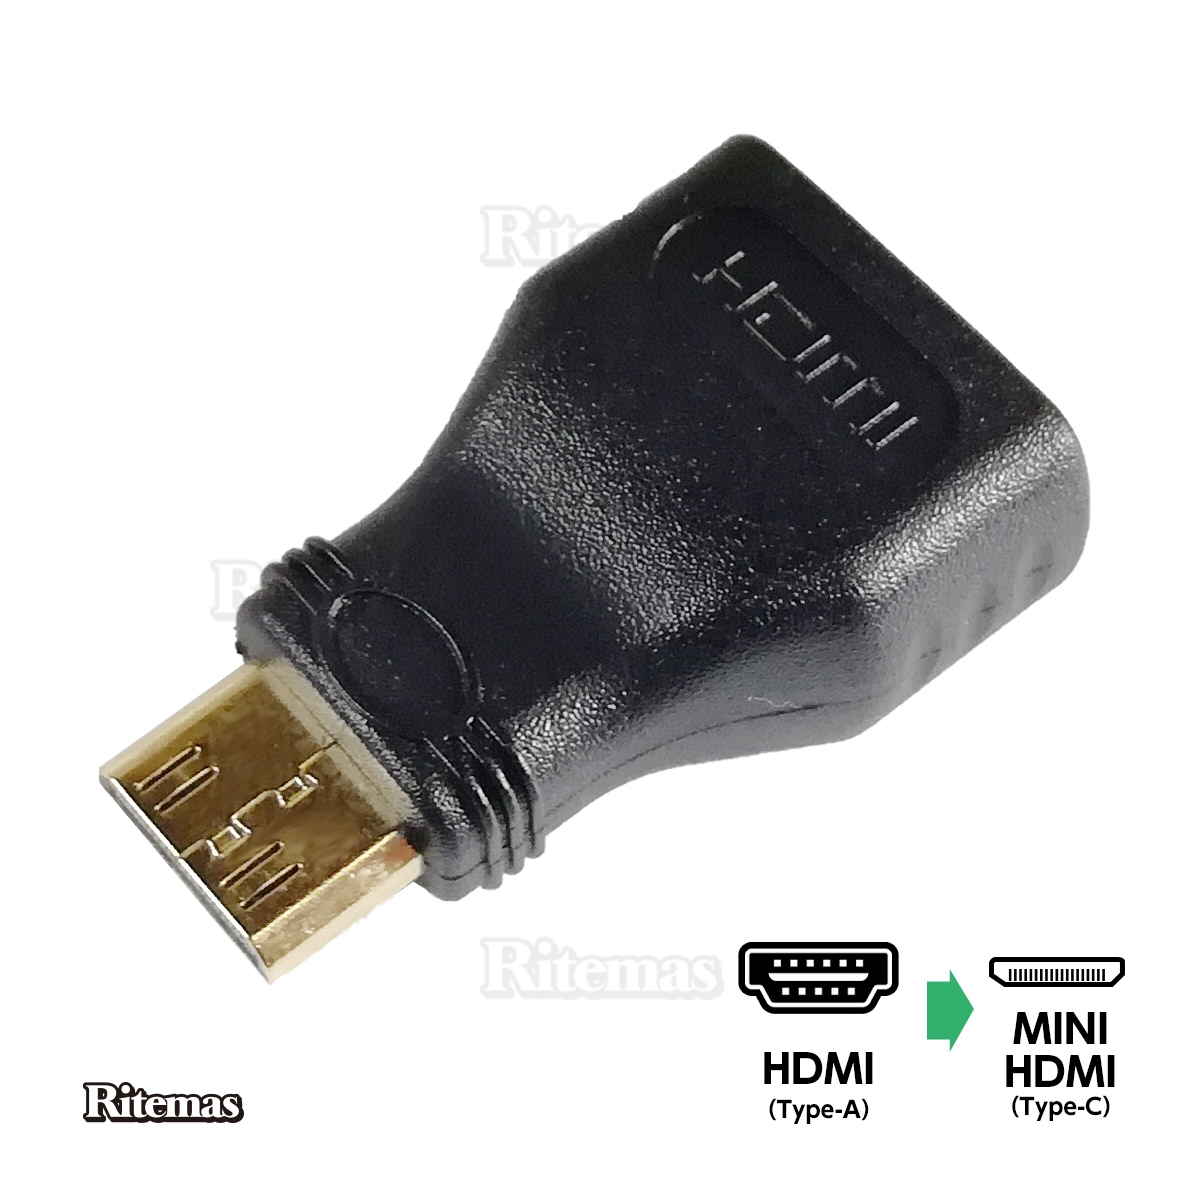 値下げ MINI HDMI変換アダプター HDMIタイプA メス HDMI-mini オス HDMI Aタイプ Cタイプ HDMIミニ 最大47%OFFクーポン 黒 Type-A 変換アダプター コネクタ Type-C 変換コネクター mini Type- 変換用 HDMIコネクタをミニHDMIコネクタに変換するHDMI変換アダプタ